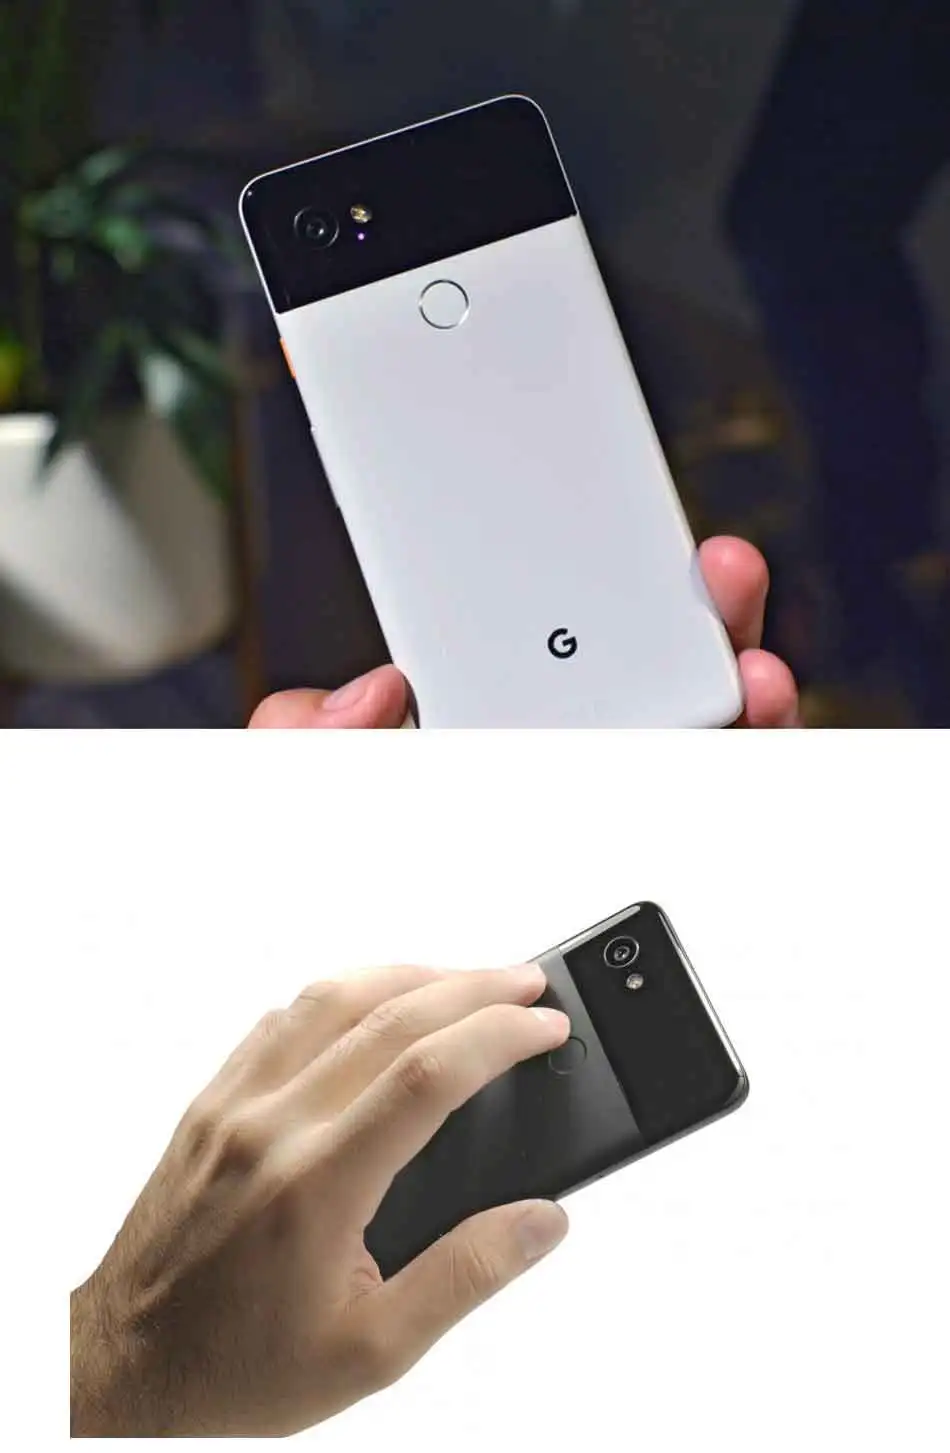 Оригинальный мобильный телефон Google Pixel 2 XL, американская версия, LTE, 6,0 дюймов, 4 Гб ОЗУ, 64 ГБ/128 Гб ПЗУ, Snapdragon 835, Android, сканер отпечатков пальцев